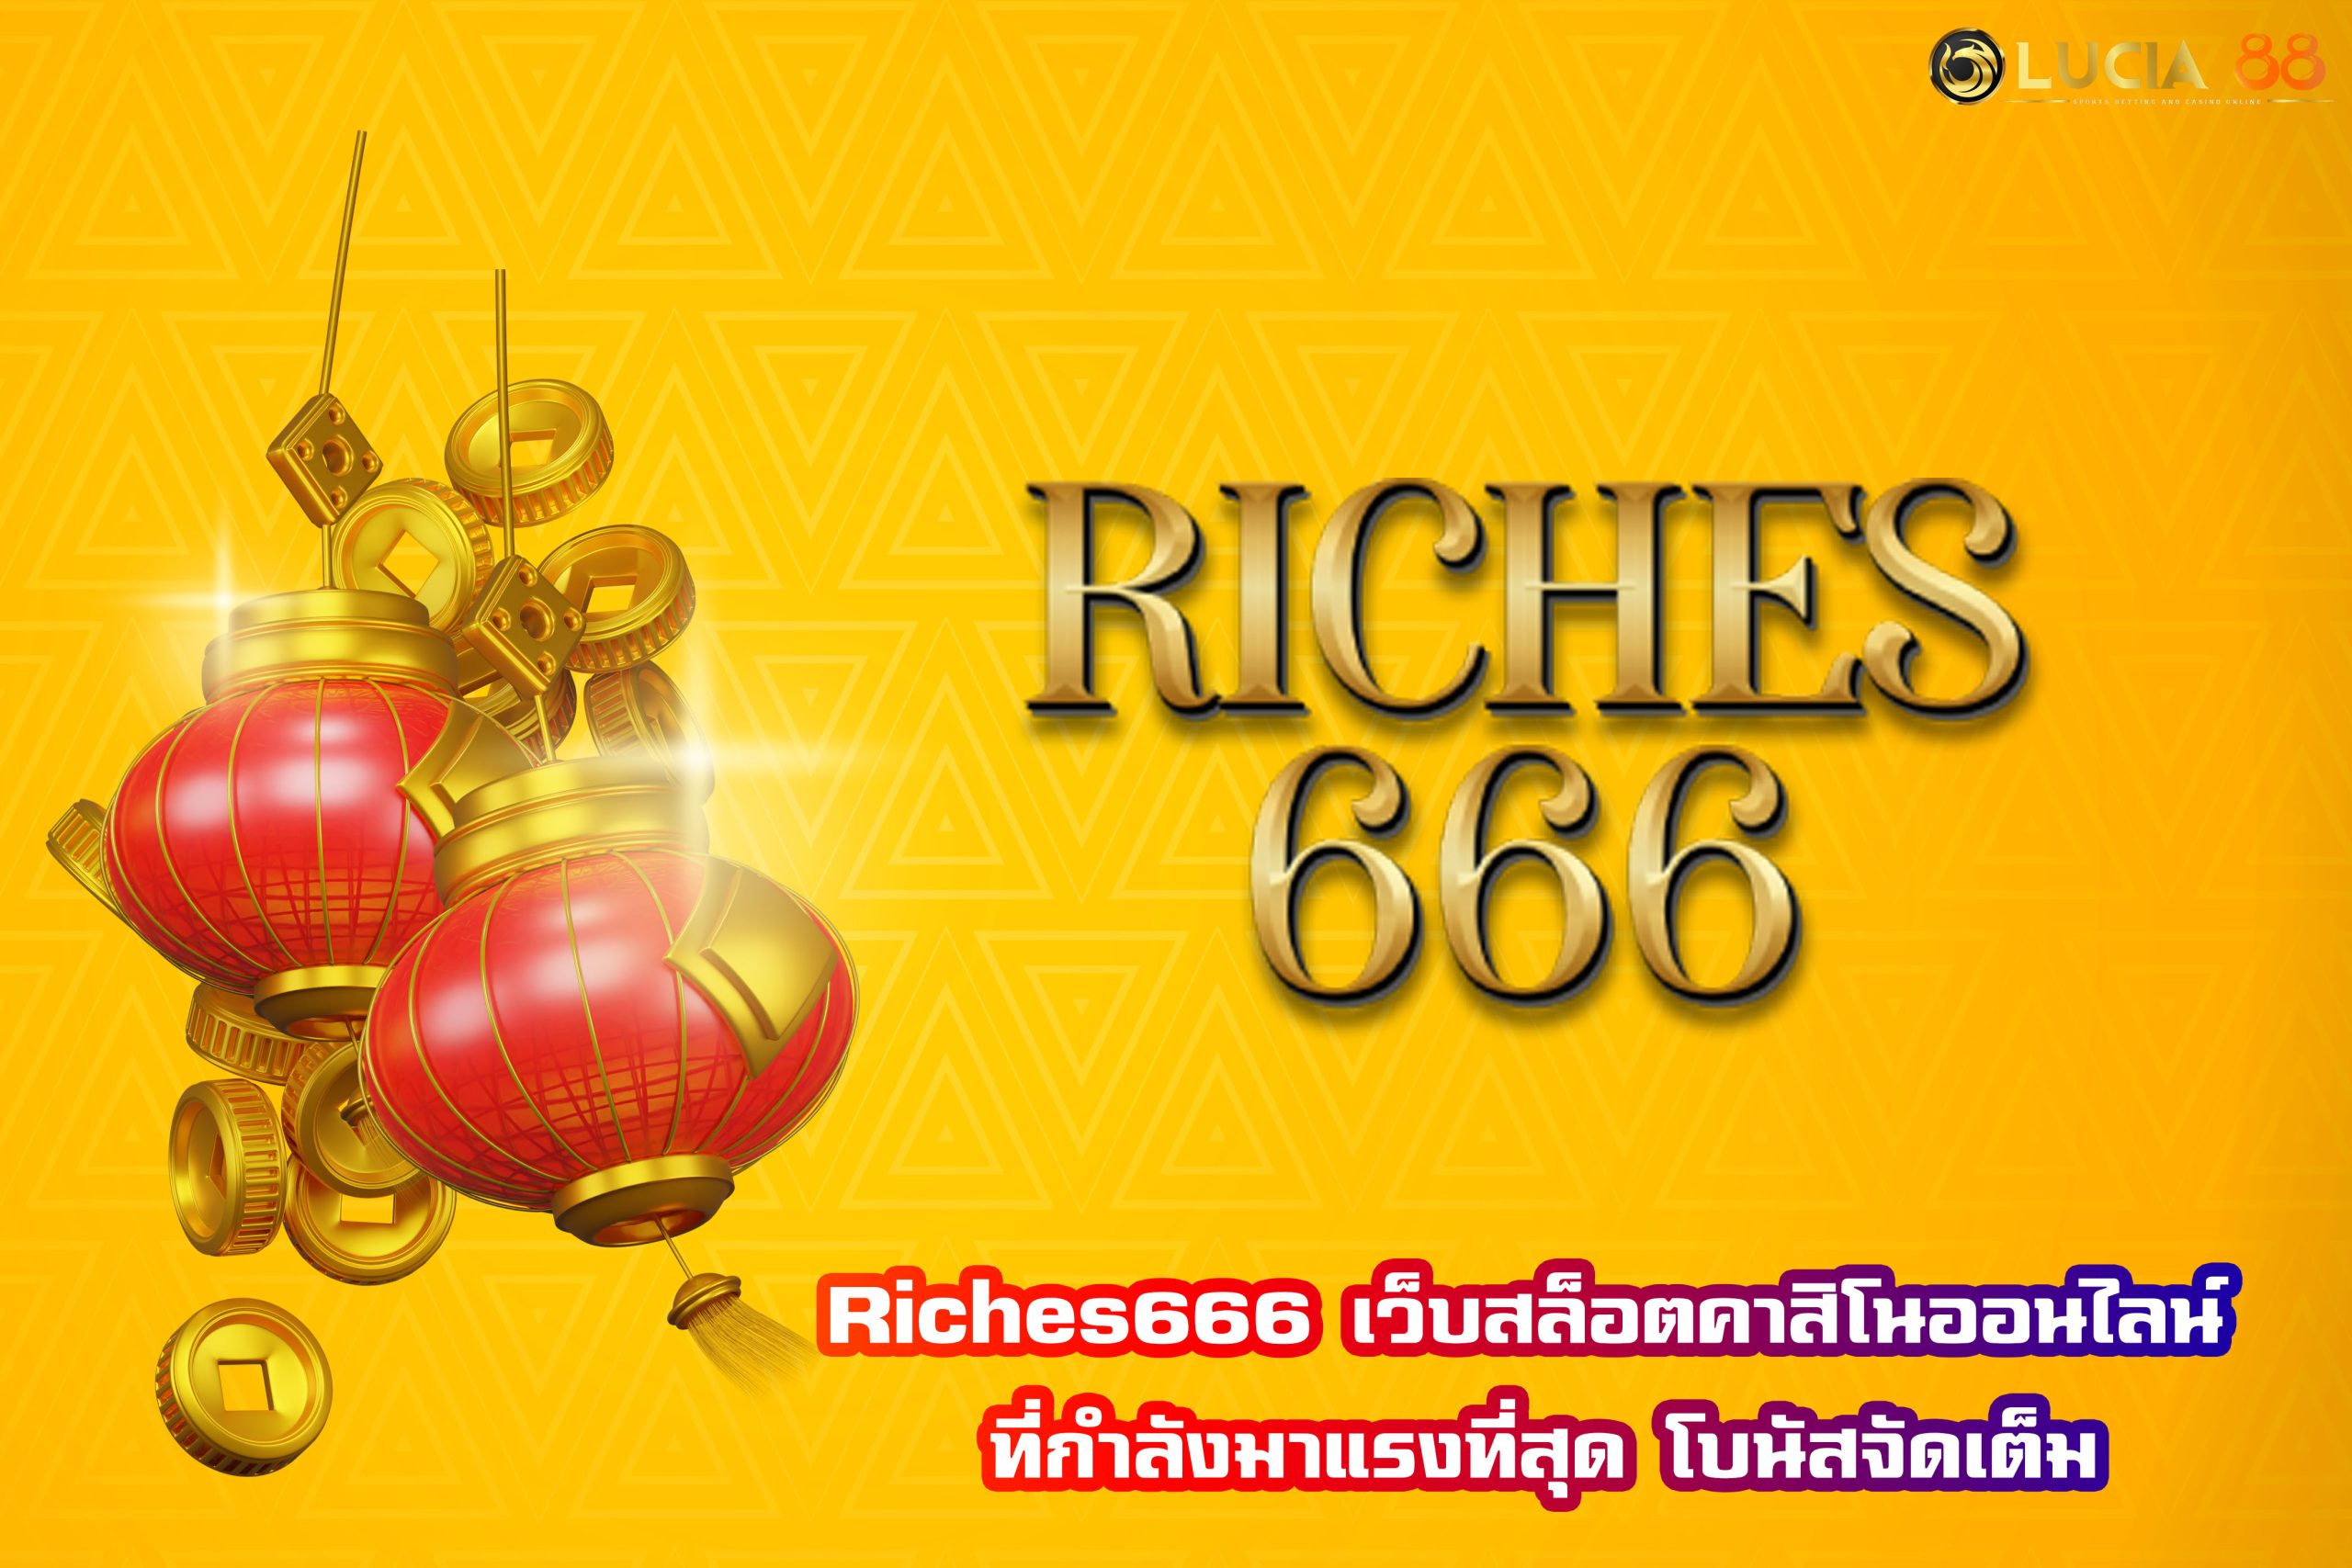 Riches666 เว็บสล็อตคาสิโนออนไลน์ ที่กำลังมาแรงที่สุด โบนัสจัดเต็ม